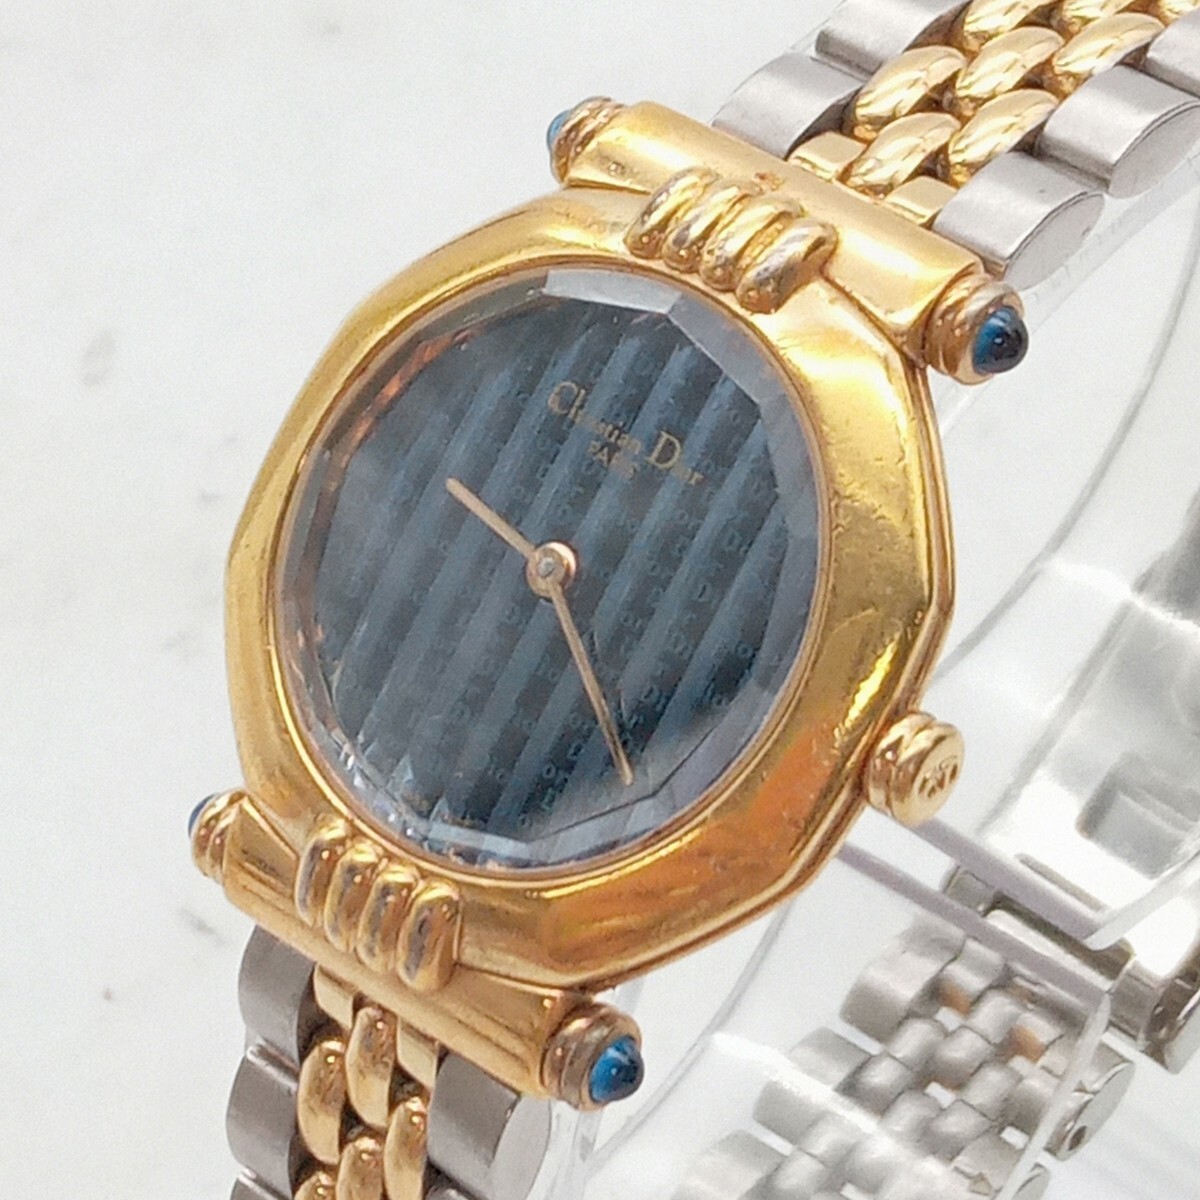  Сугимото 4 месяц No.150 наручные часы Christian Dior Christian Dior работоспособность не проверялась оттенок серебра синий циферблат общий рисунок Logo раунд 